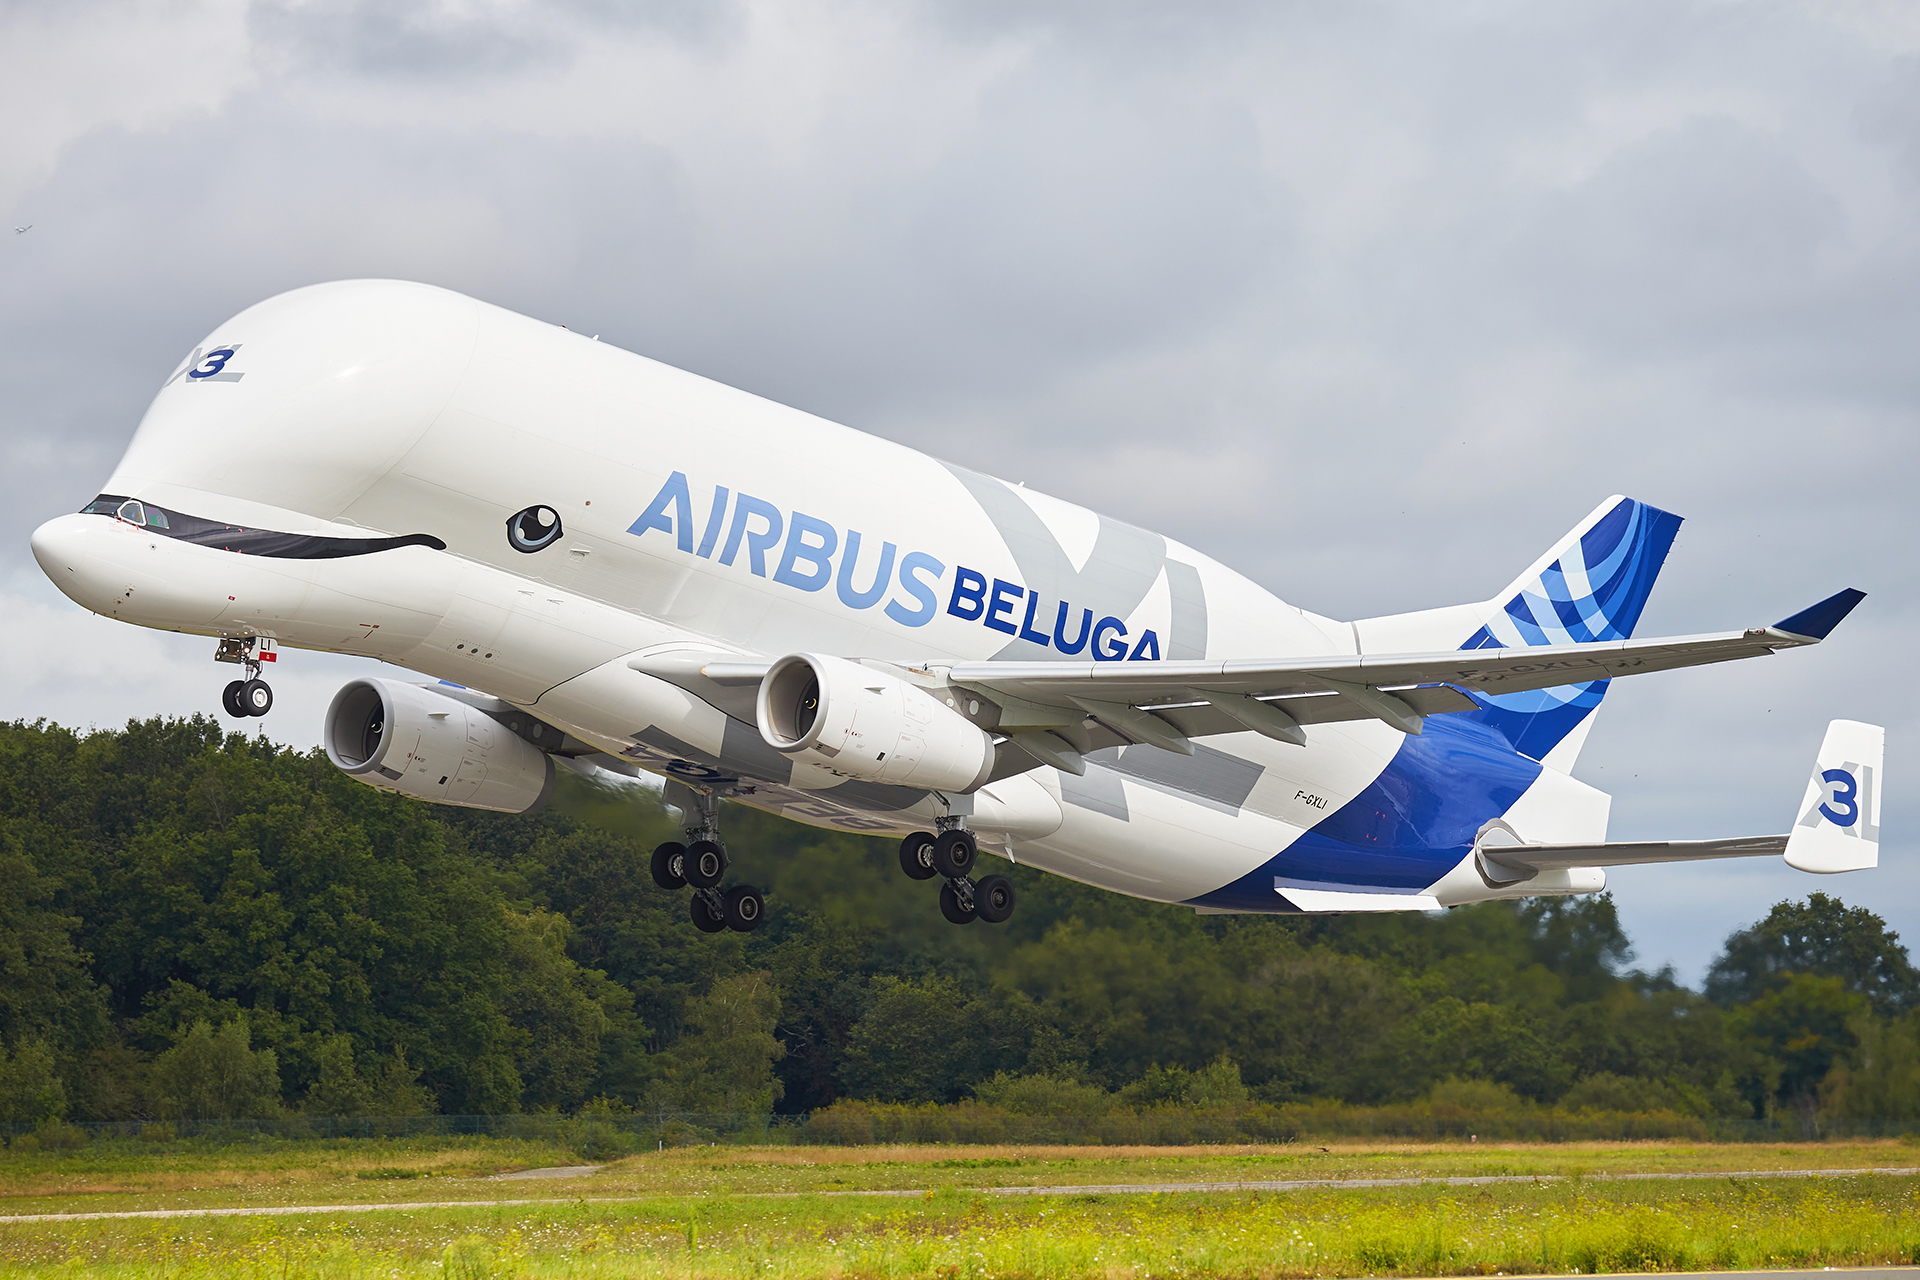 [10/08/2021] Airbus A330-743L (F-GXLI) Airbus Transport International: Beluga "XL" 3 WAVnMb-GRX-6035